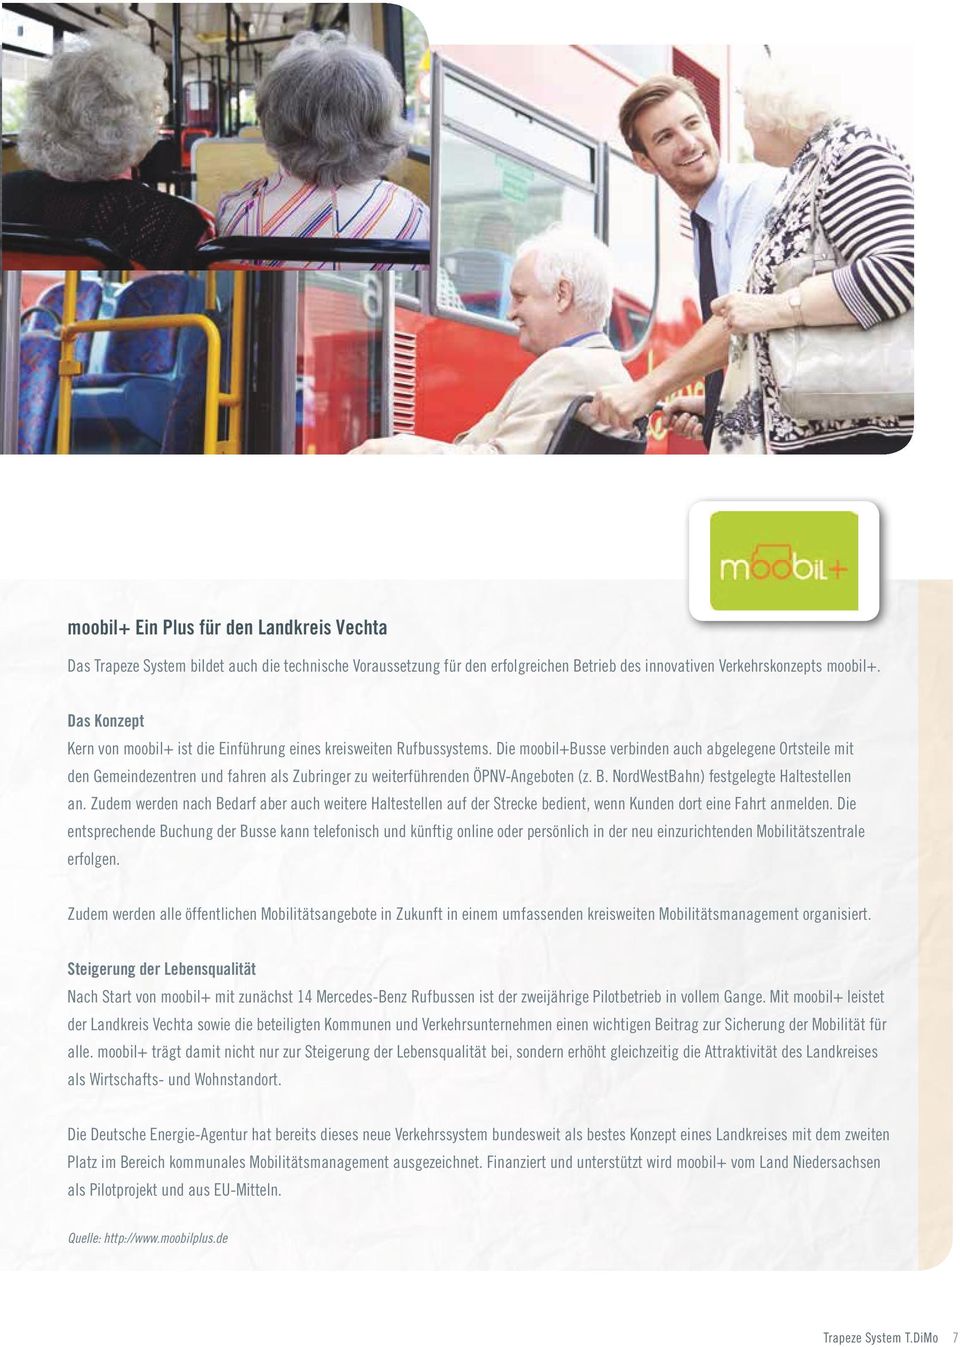 Die moobil+busse verbinden auch abgelegene Ortsteile mit den Gemeindezentren und fahren als Zubringer zu weiterführenden ÖPNV-Angeboten (z. B. NordWestBahn) festgelegte Haltestellen an.